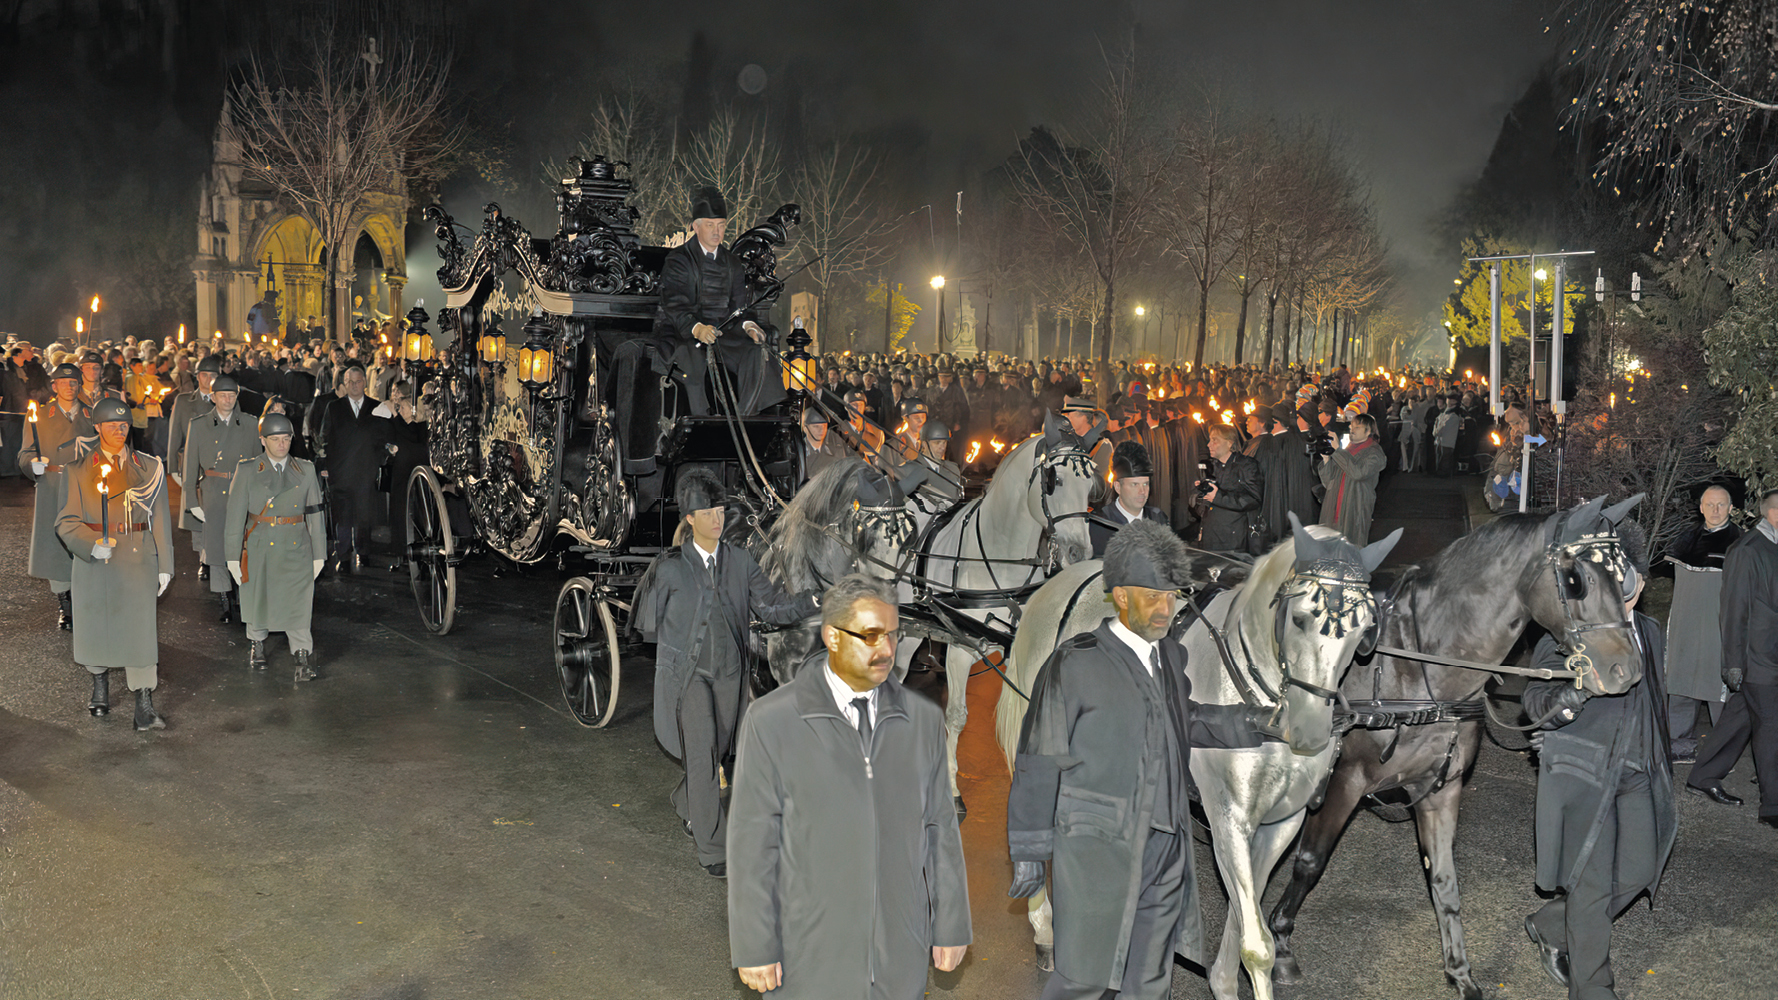 Trauerzug mit schwarzer, prunkvoller Kutsche, die von vier Pferden gezogen wird. Viele Menschen säumen den Zug mit Kerzen in der Hand